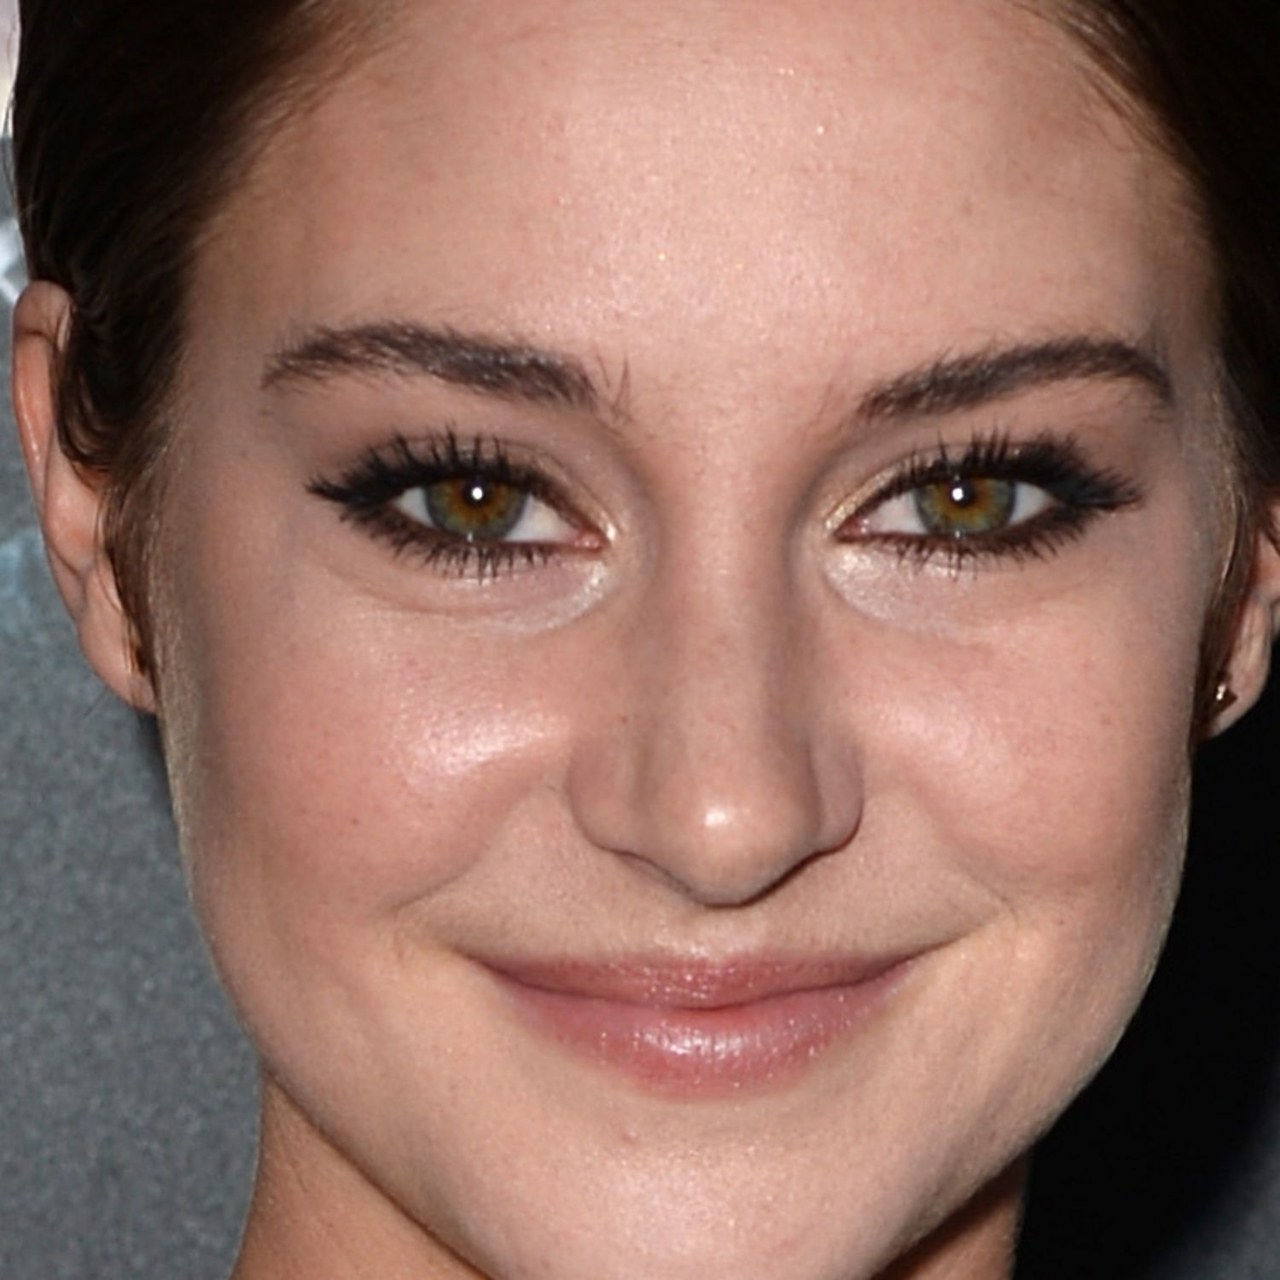 Shailene woodley divergent premiere makeup close